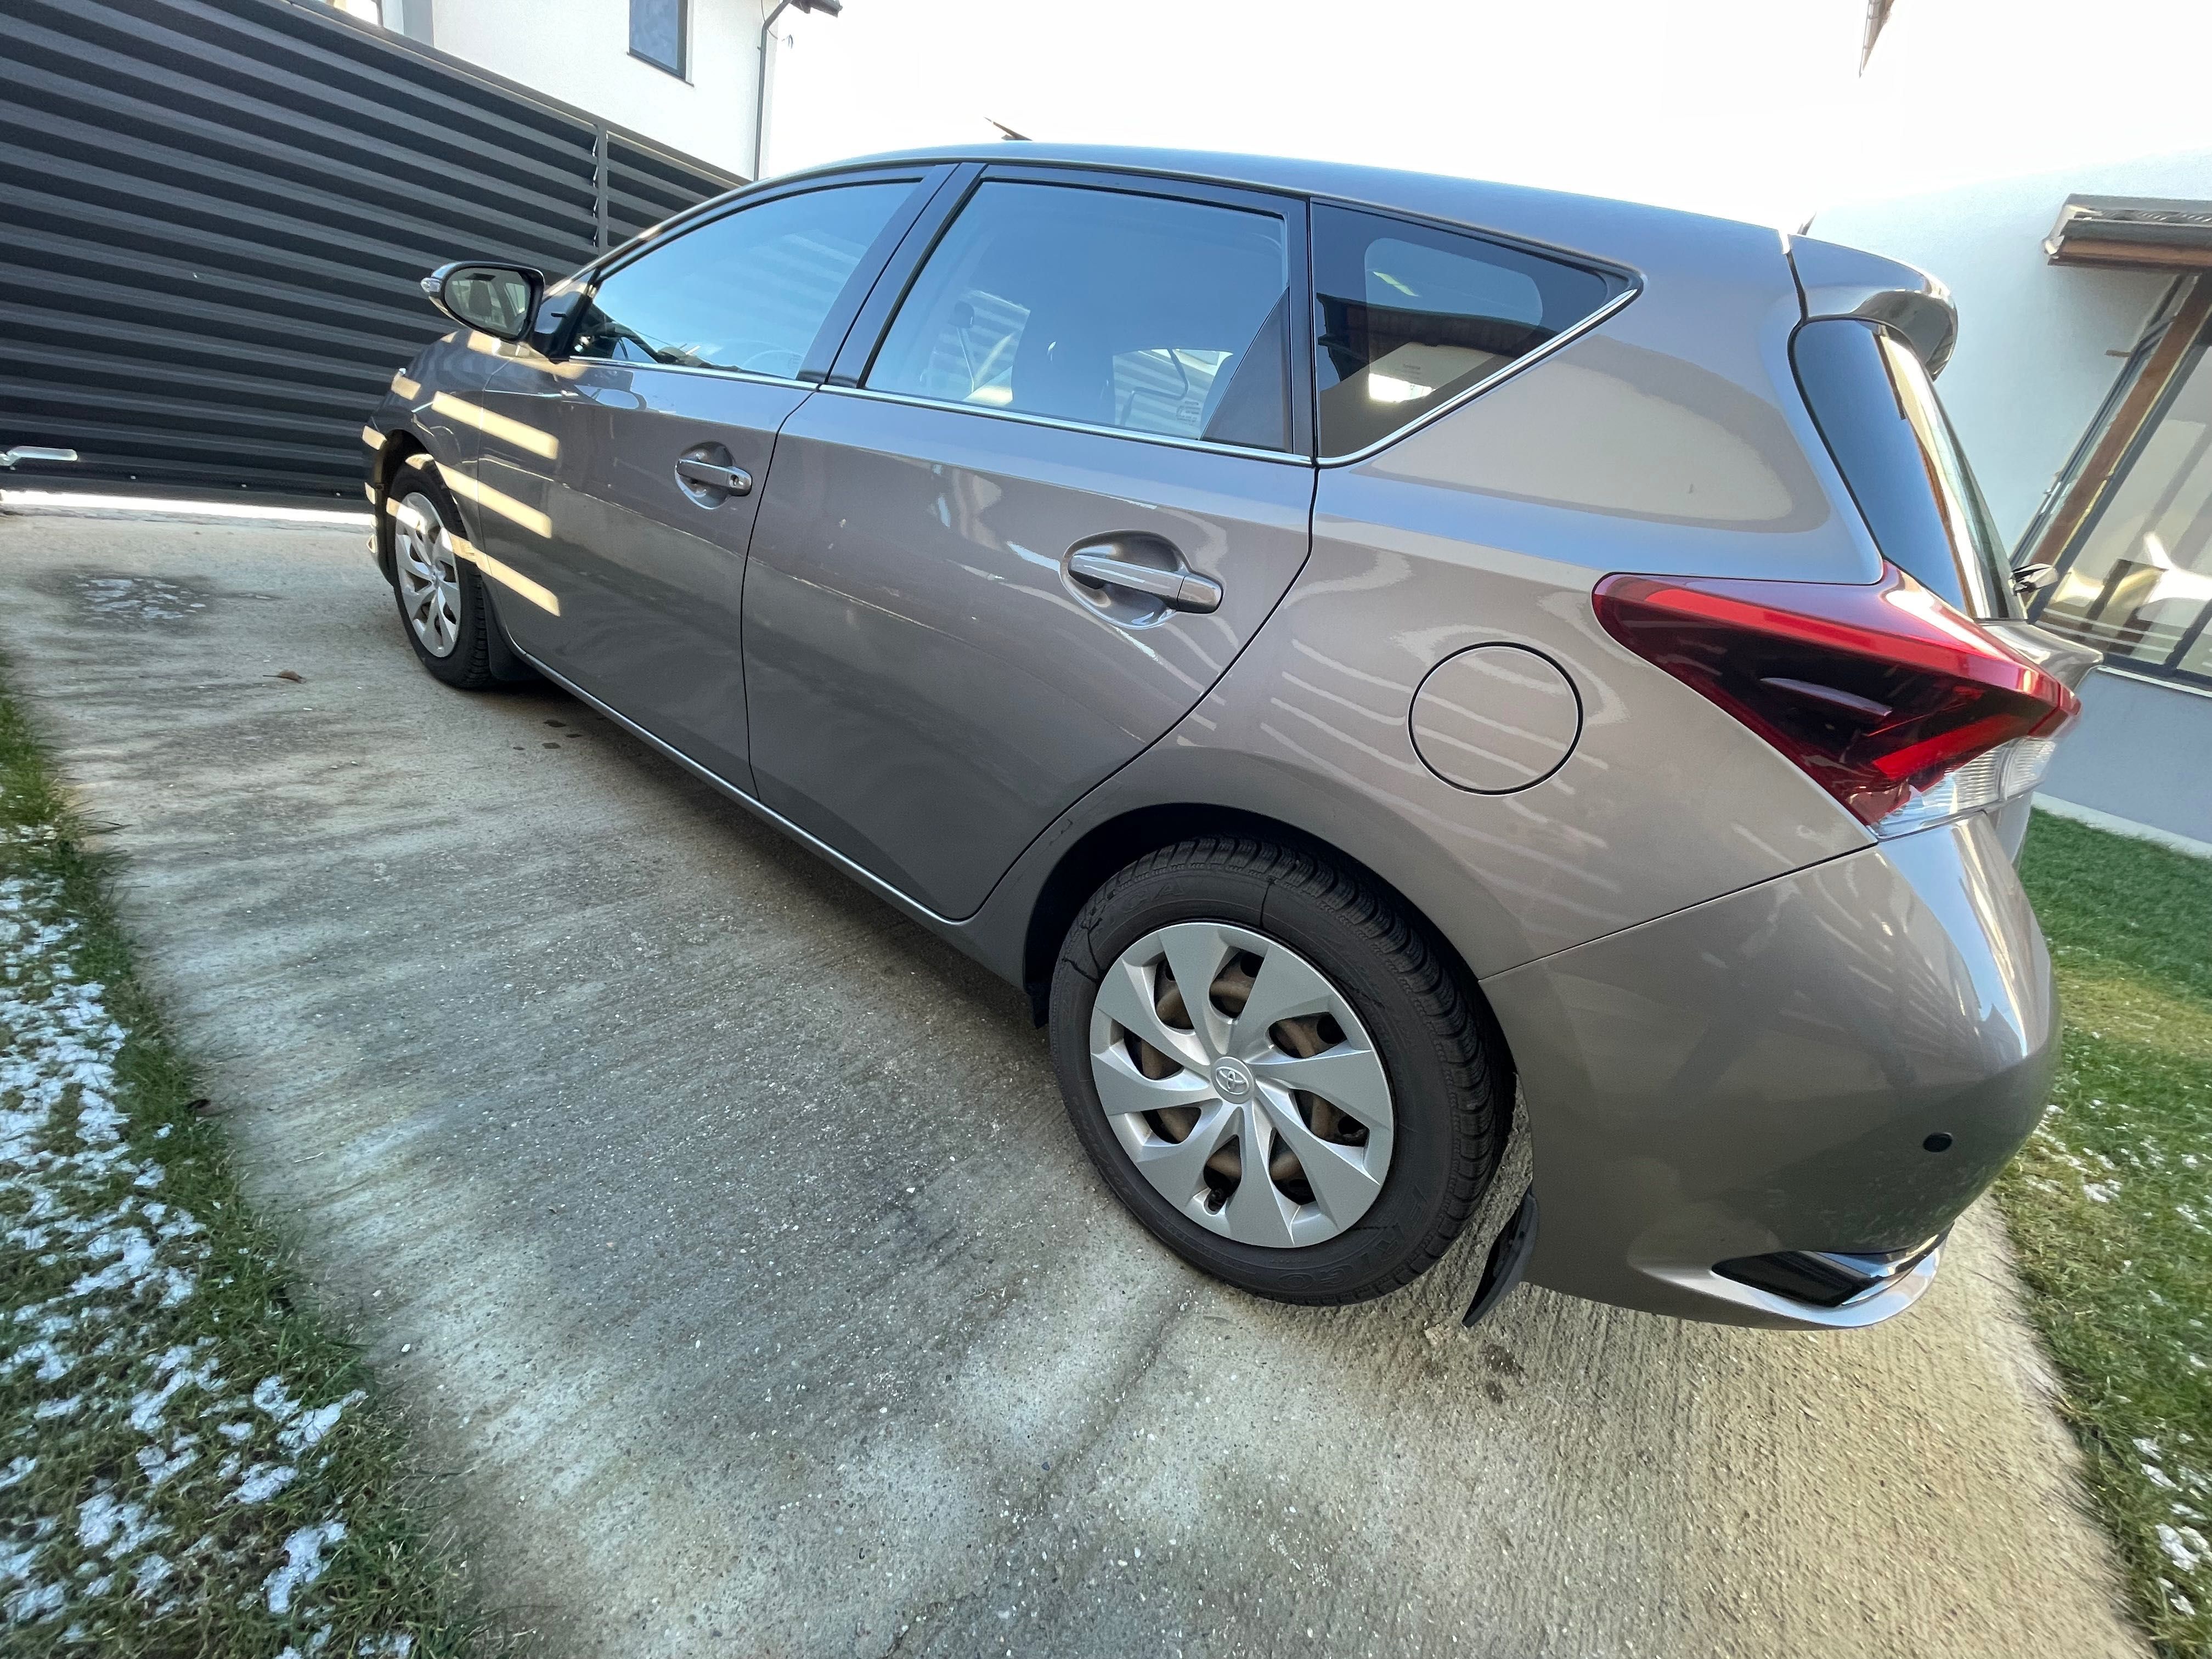 Toyota Auris, 2016, benzină, automată, 164000km reali